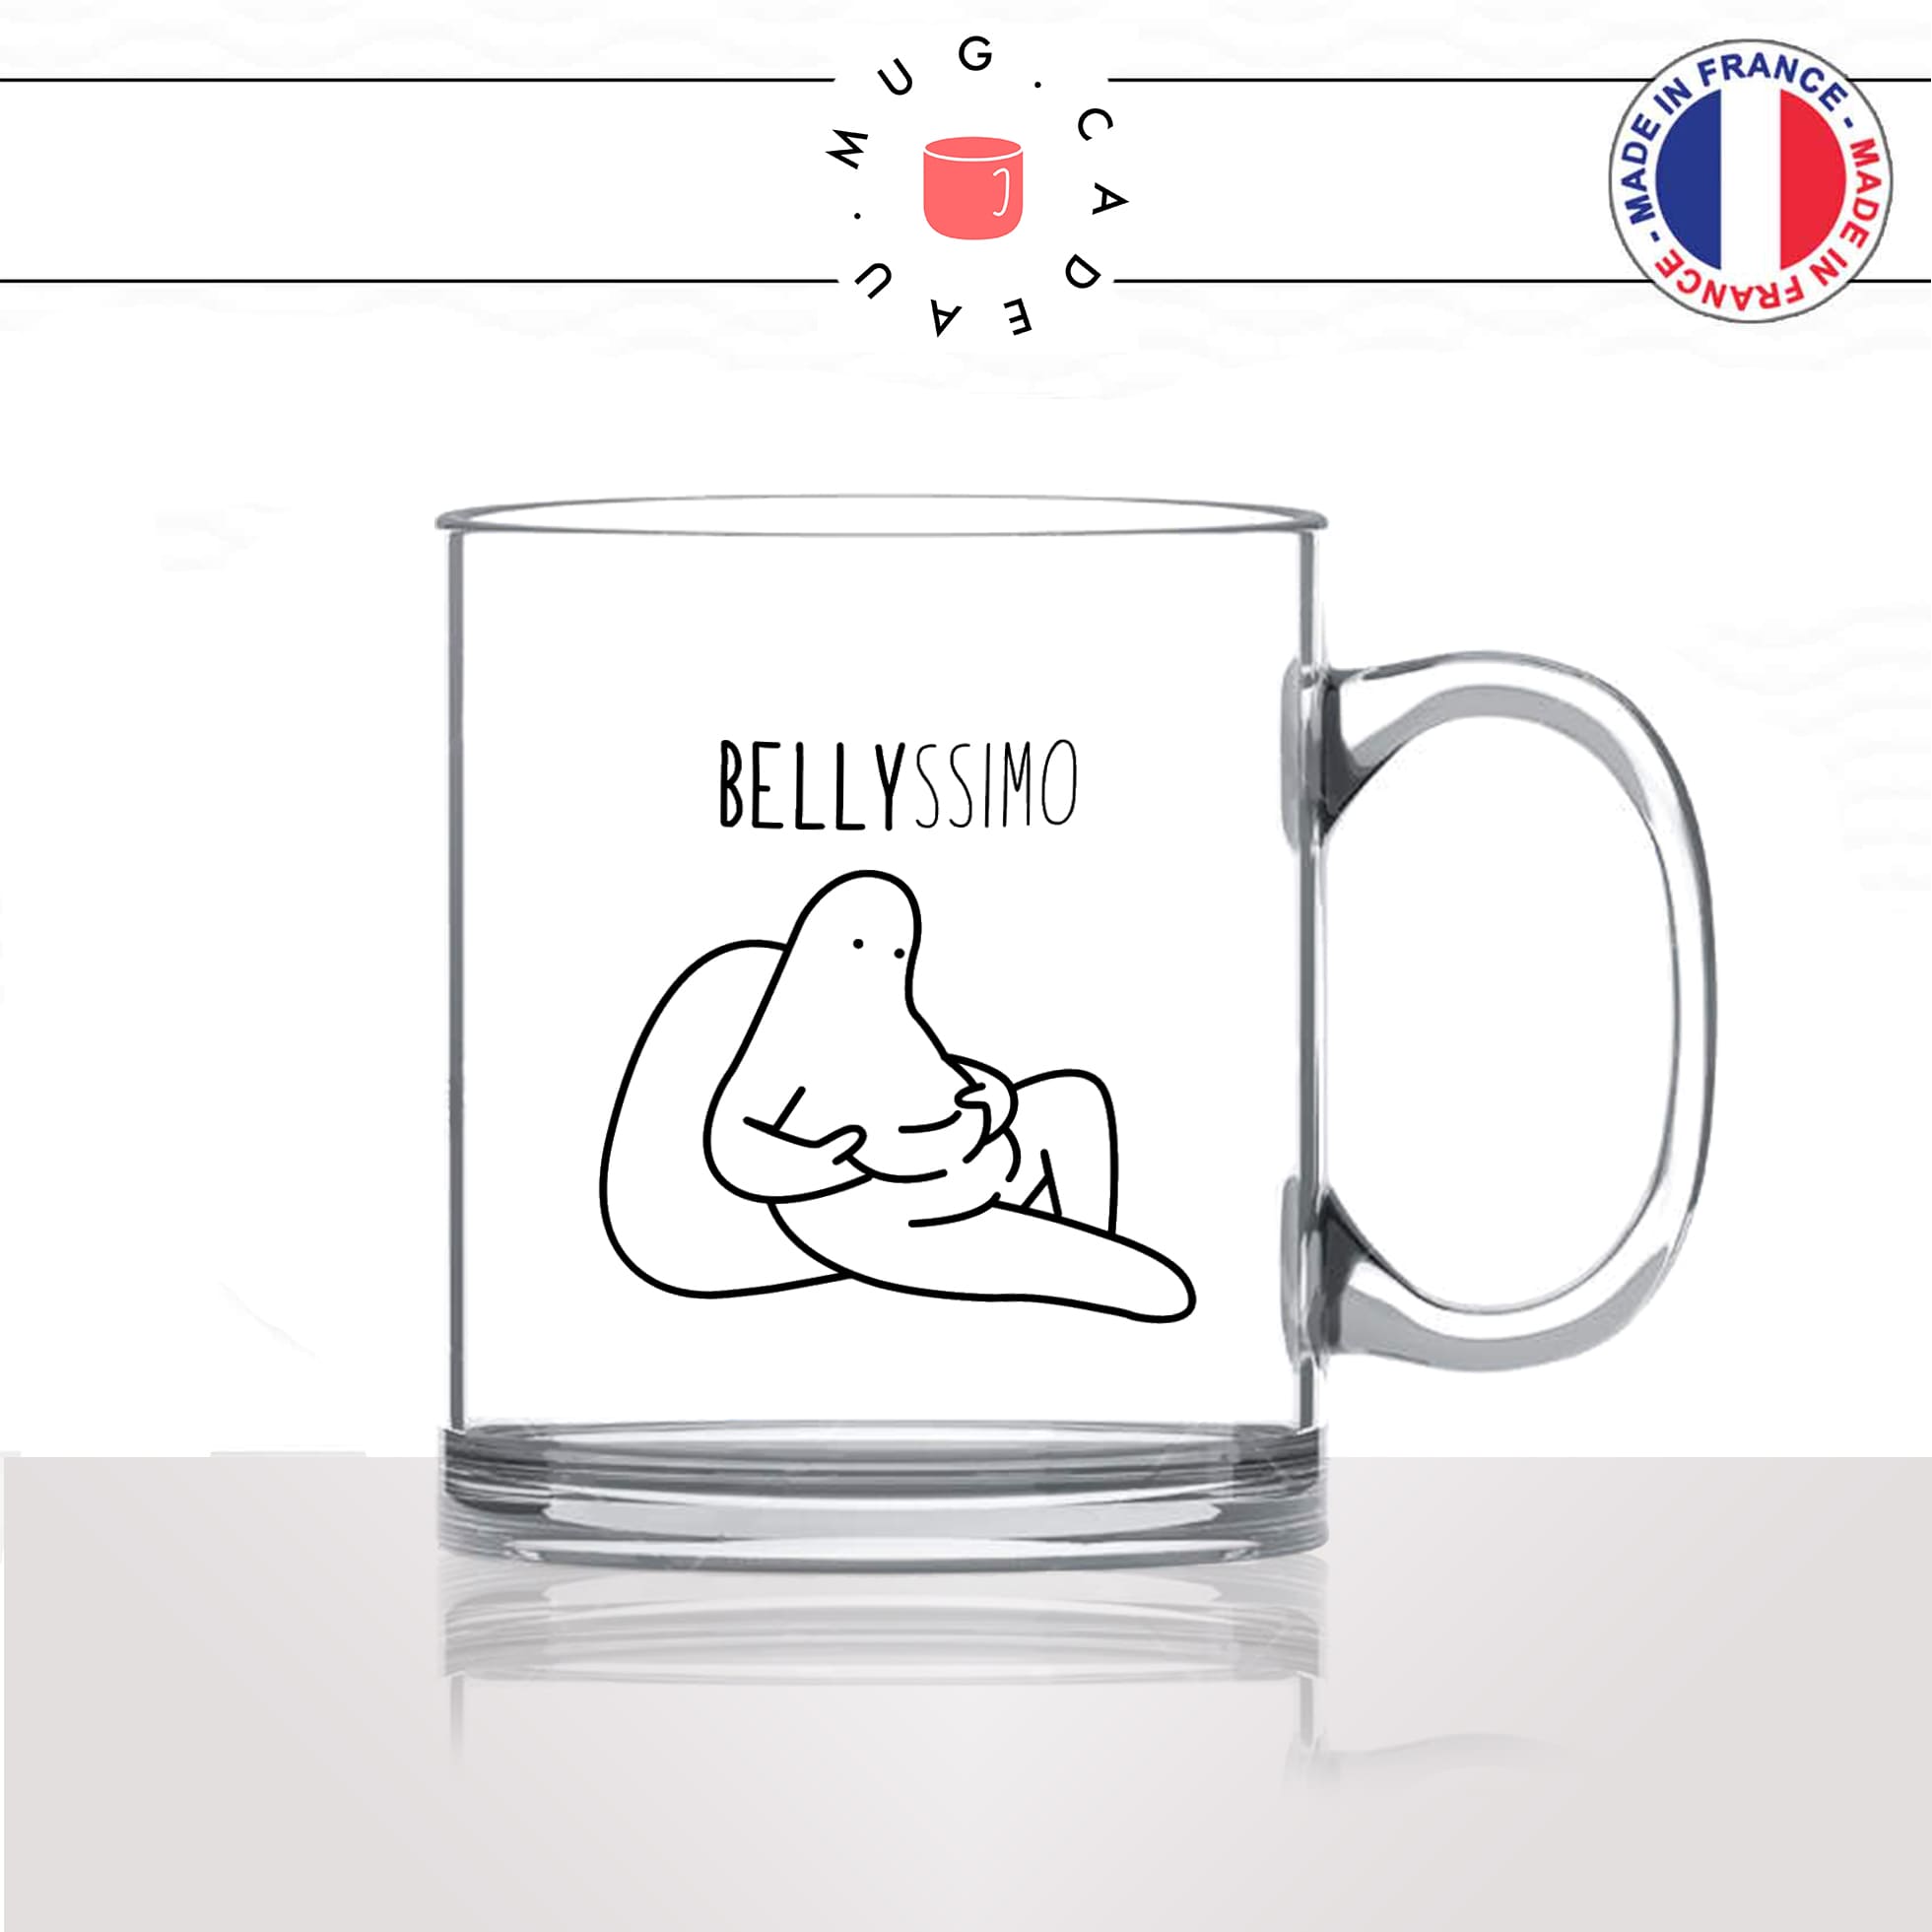 mug-tasse-en-verre-transparent-glass-belly-ssimo-bellissimo-italien-ventregros-gras-regime-femme-homme-humour-idée-cadeau-fun-cool-café-thé2